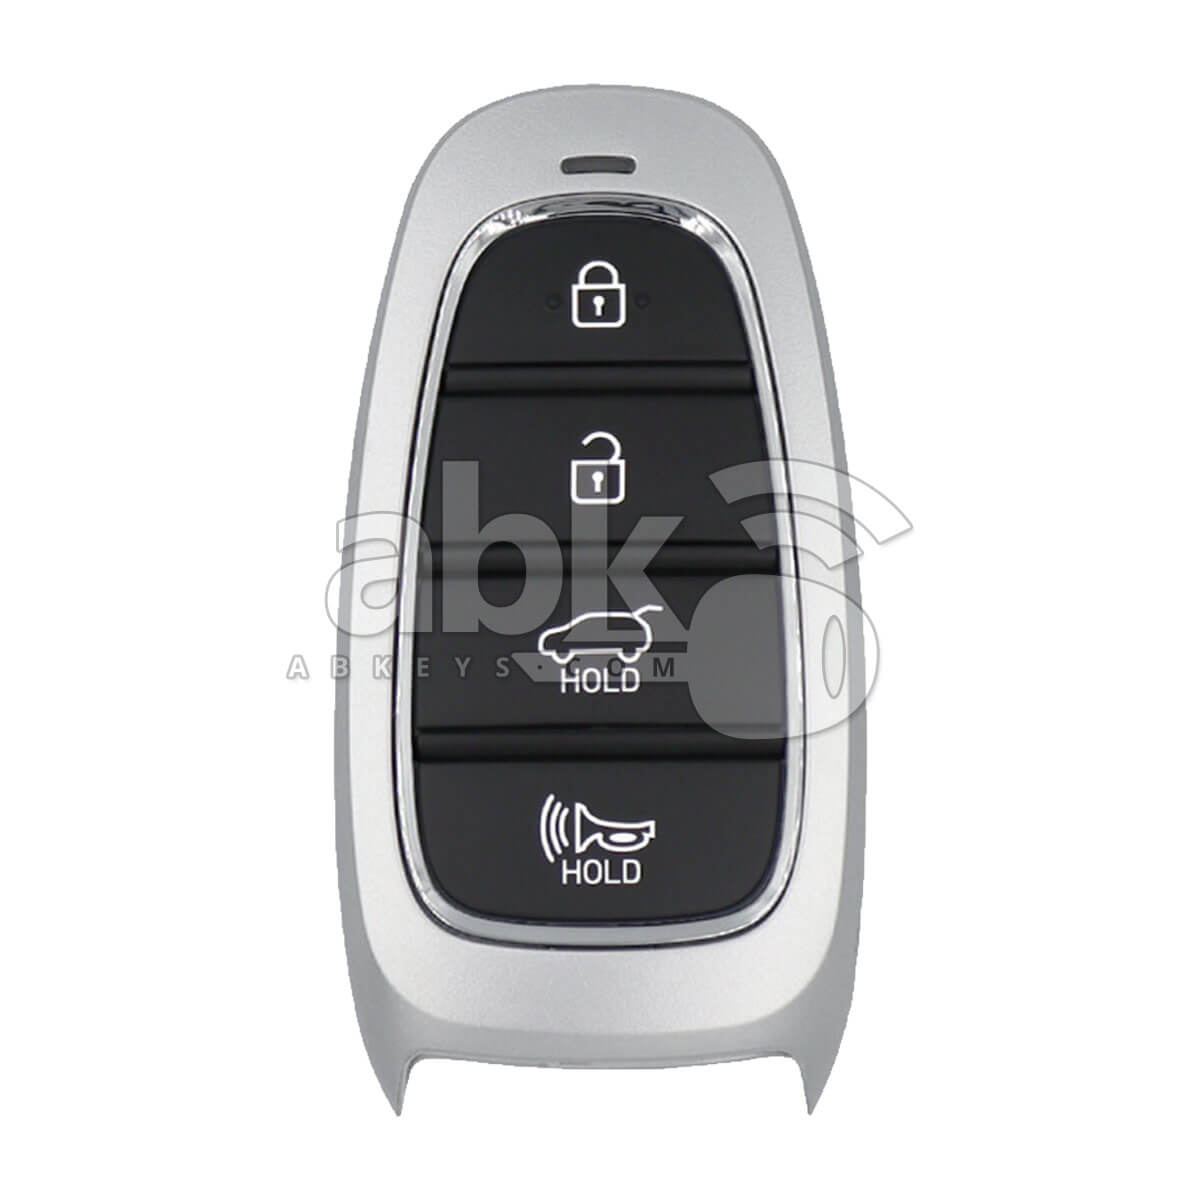 Hyundai 2019+ Smart Key Cover 4Buttons - ABK-5234 - ABKEYS.COM